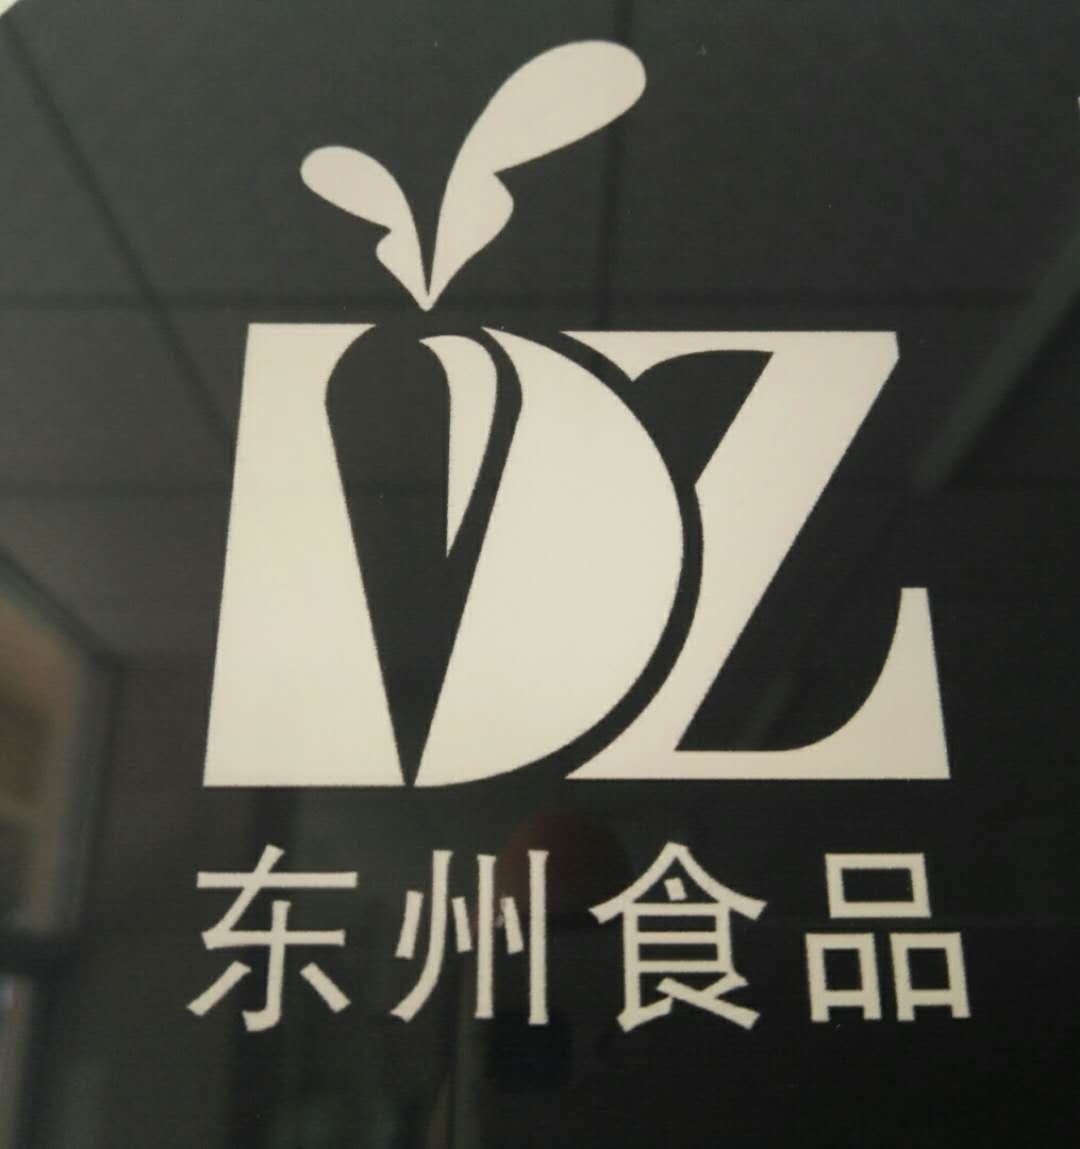  Yunxiao Dongzhou Frozen Food Co., Ltd